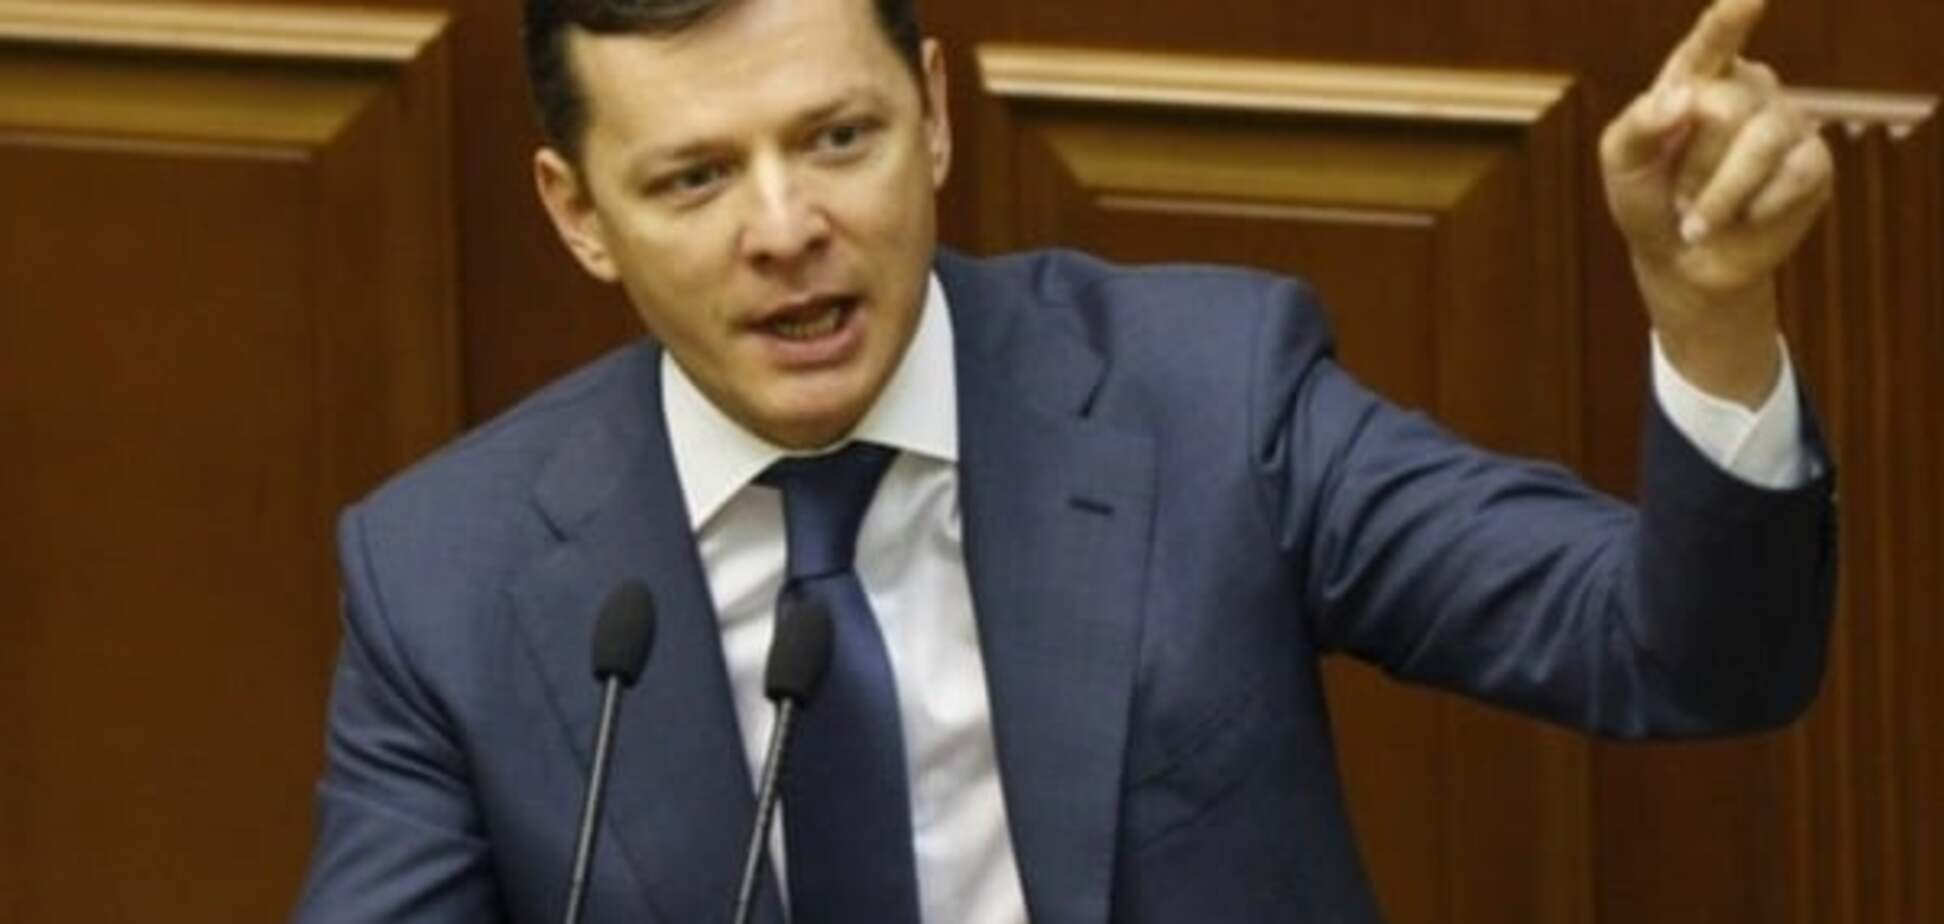 Коалиция хочет вернуть фракцию Радикальной партии, Ляшко выдвинул условия